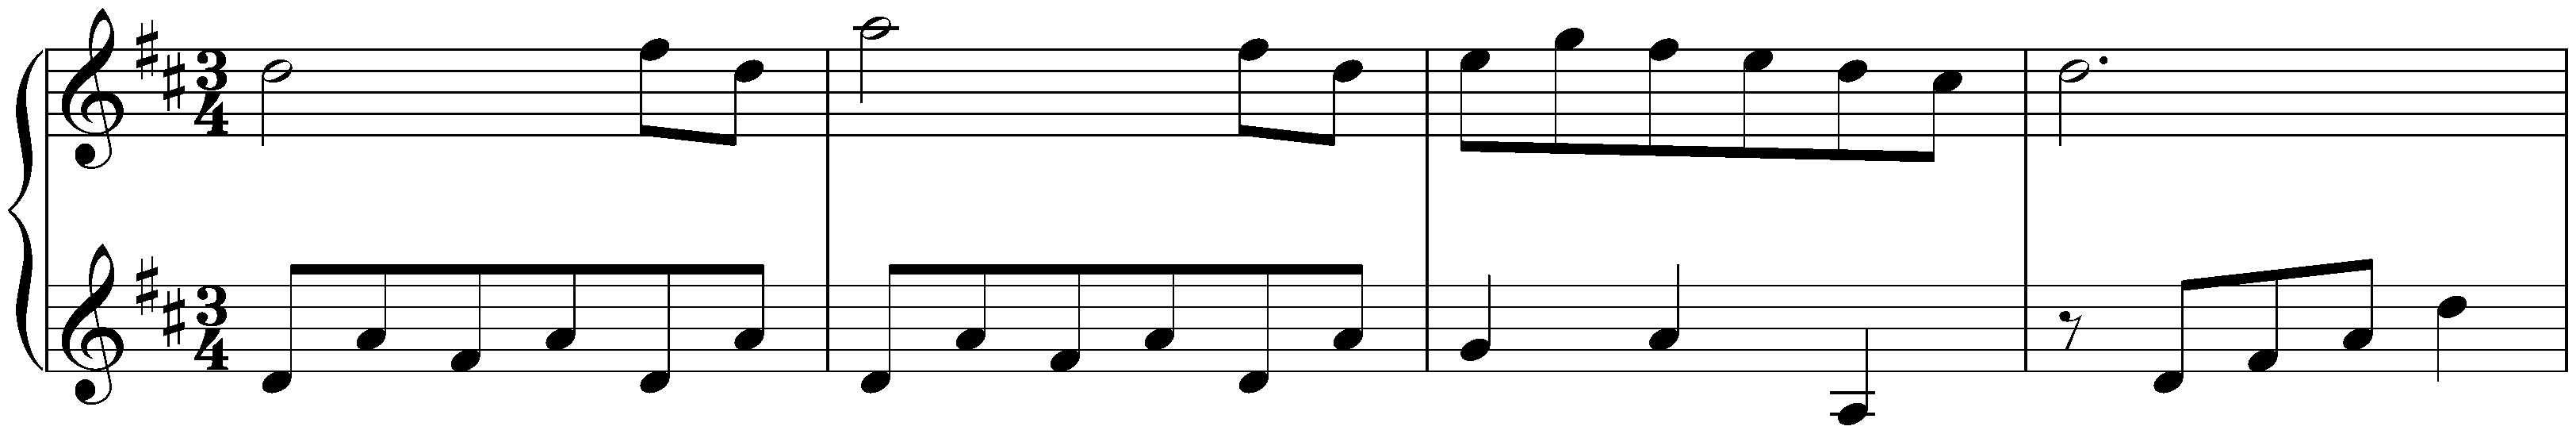 Notebook for Nannerl, KV 1–8; 47. Minuet in D major, KV 7/3i